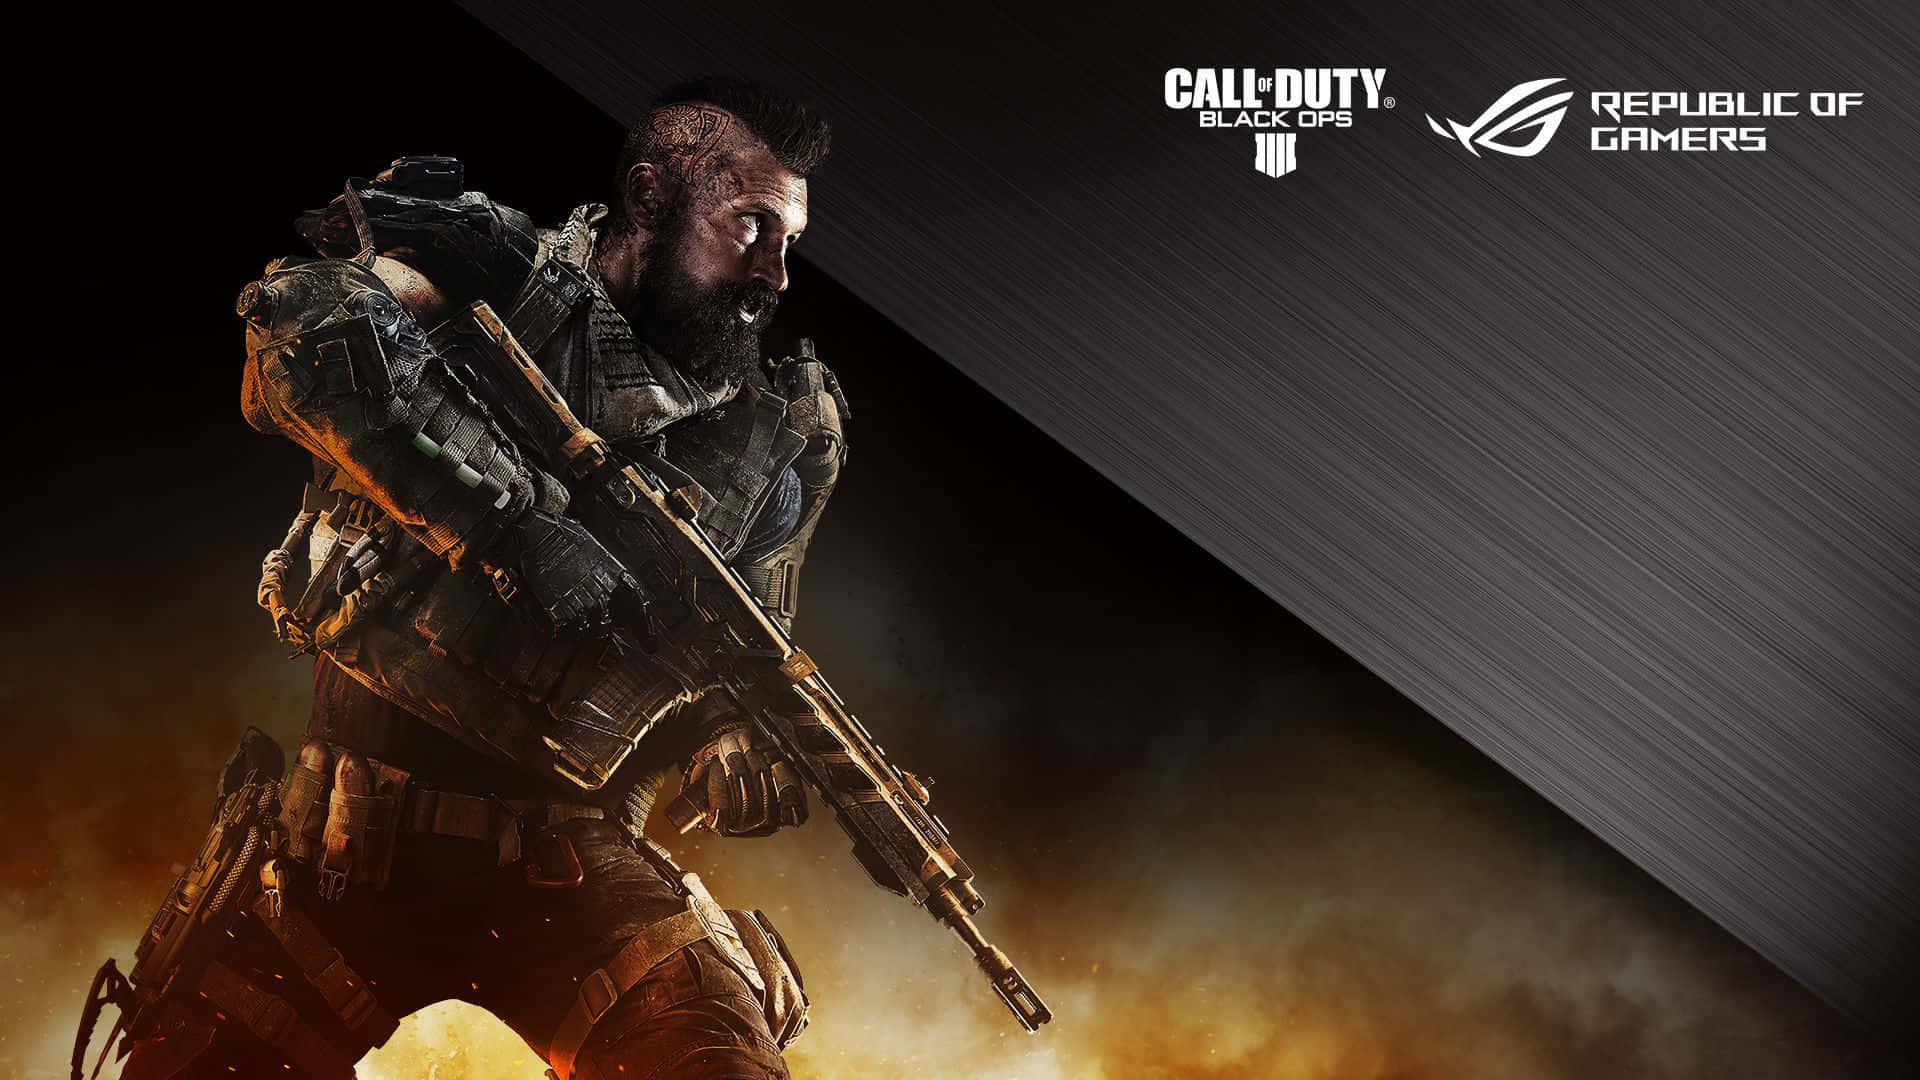 Mostrai Tuoi Veri Colori Con L'ultima Edizione Di Call Of Duty: Black Ops 4.